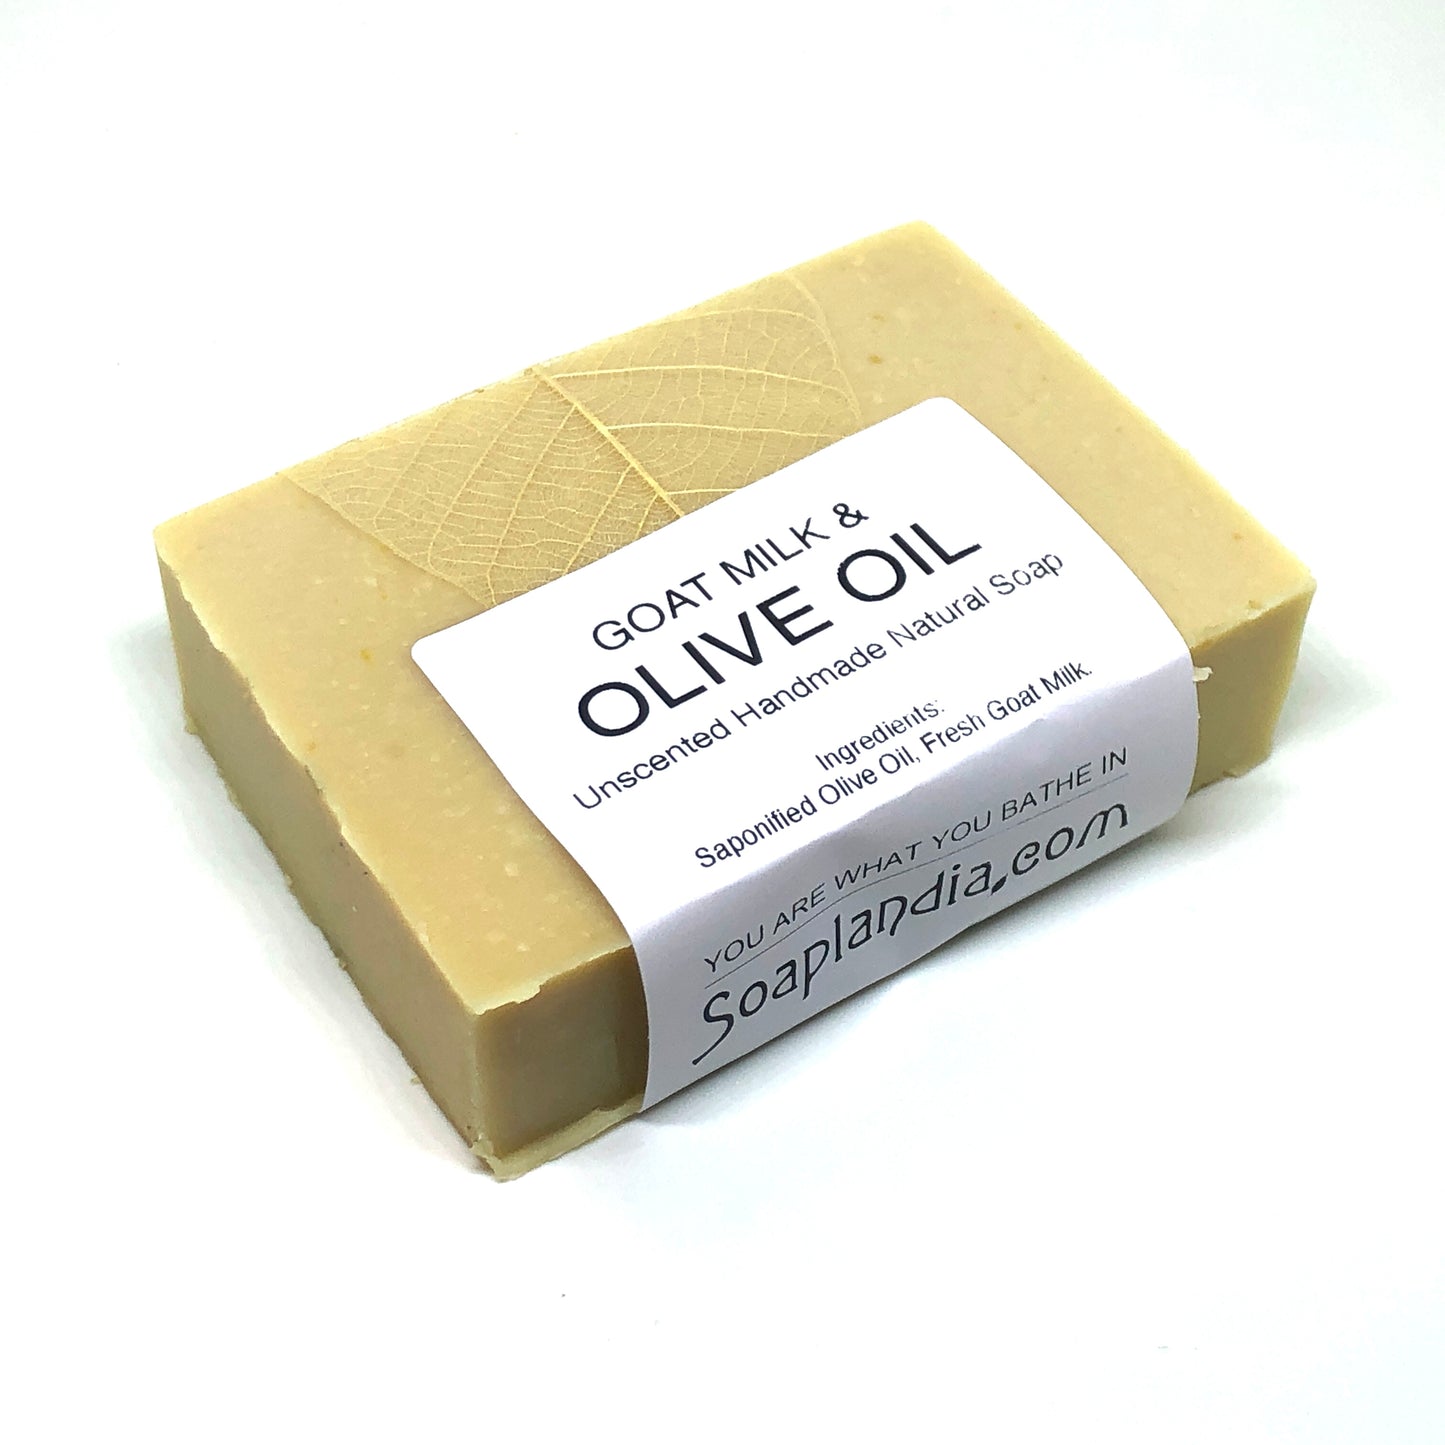 Goat Milk & Olive Oil Bar Soap, Unscented